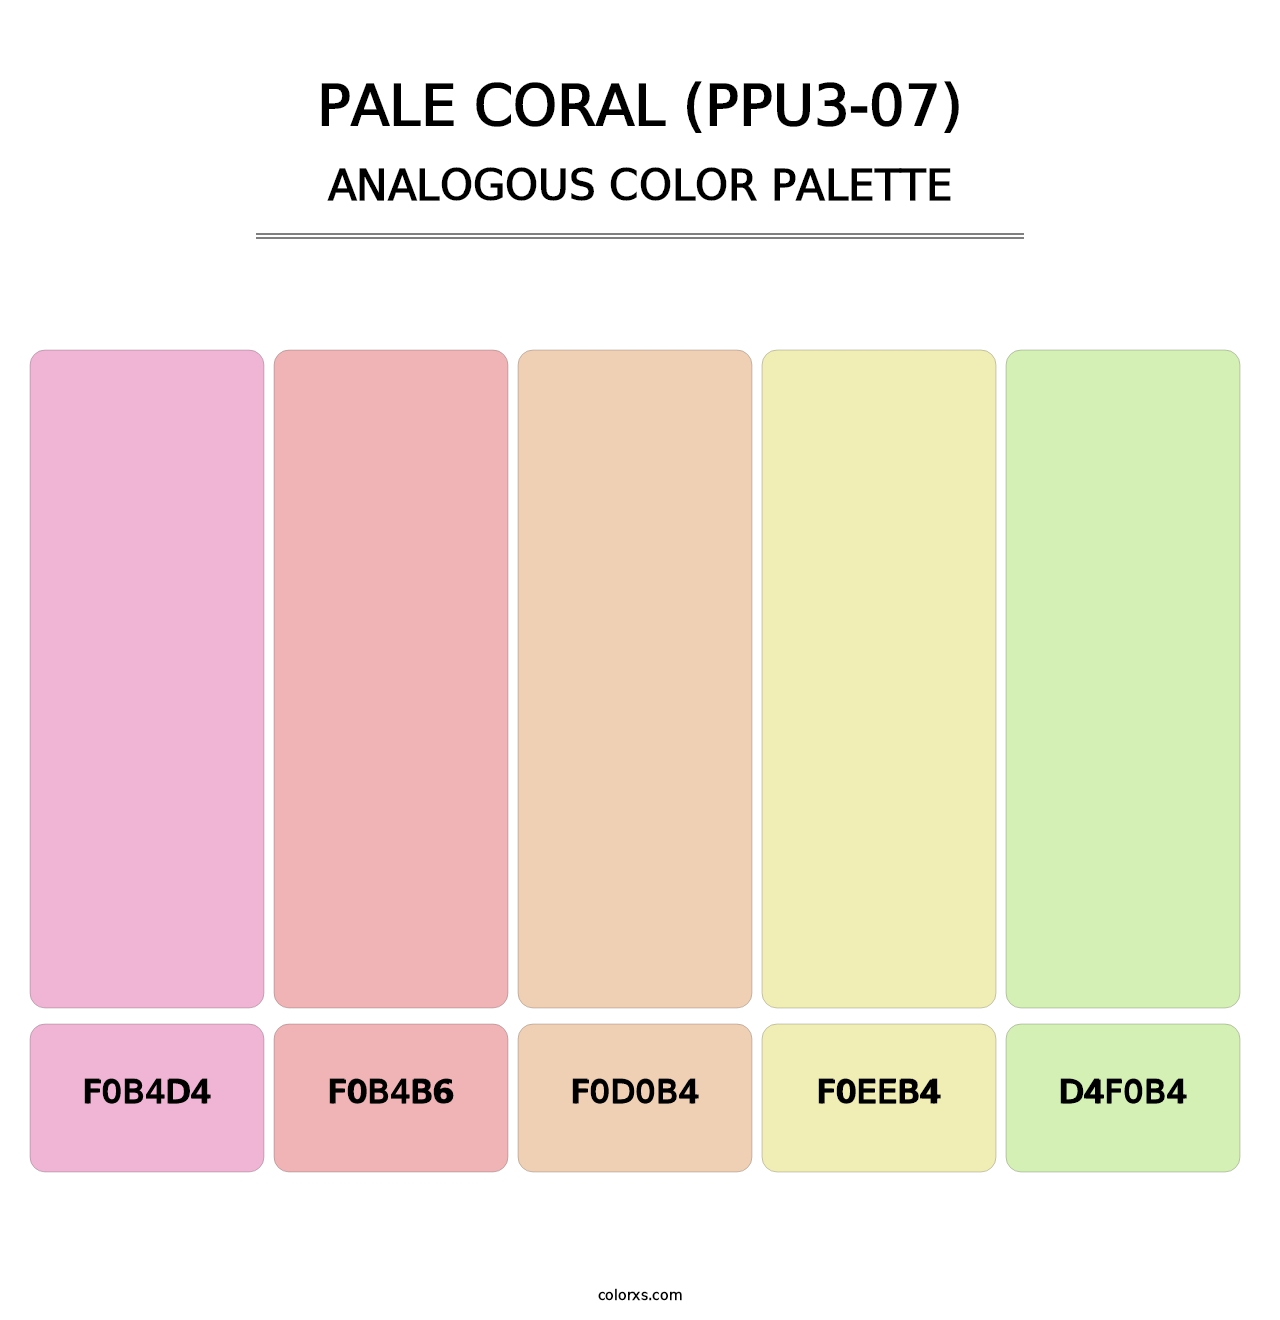 Pale Coral (PPU3-07) - Analogous Color Palette